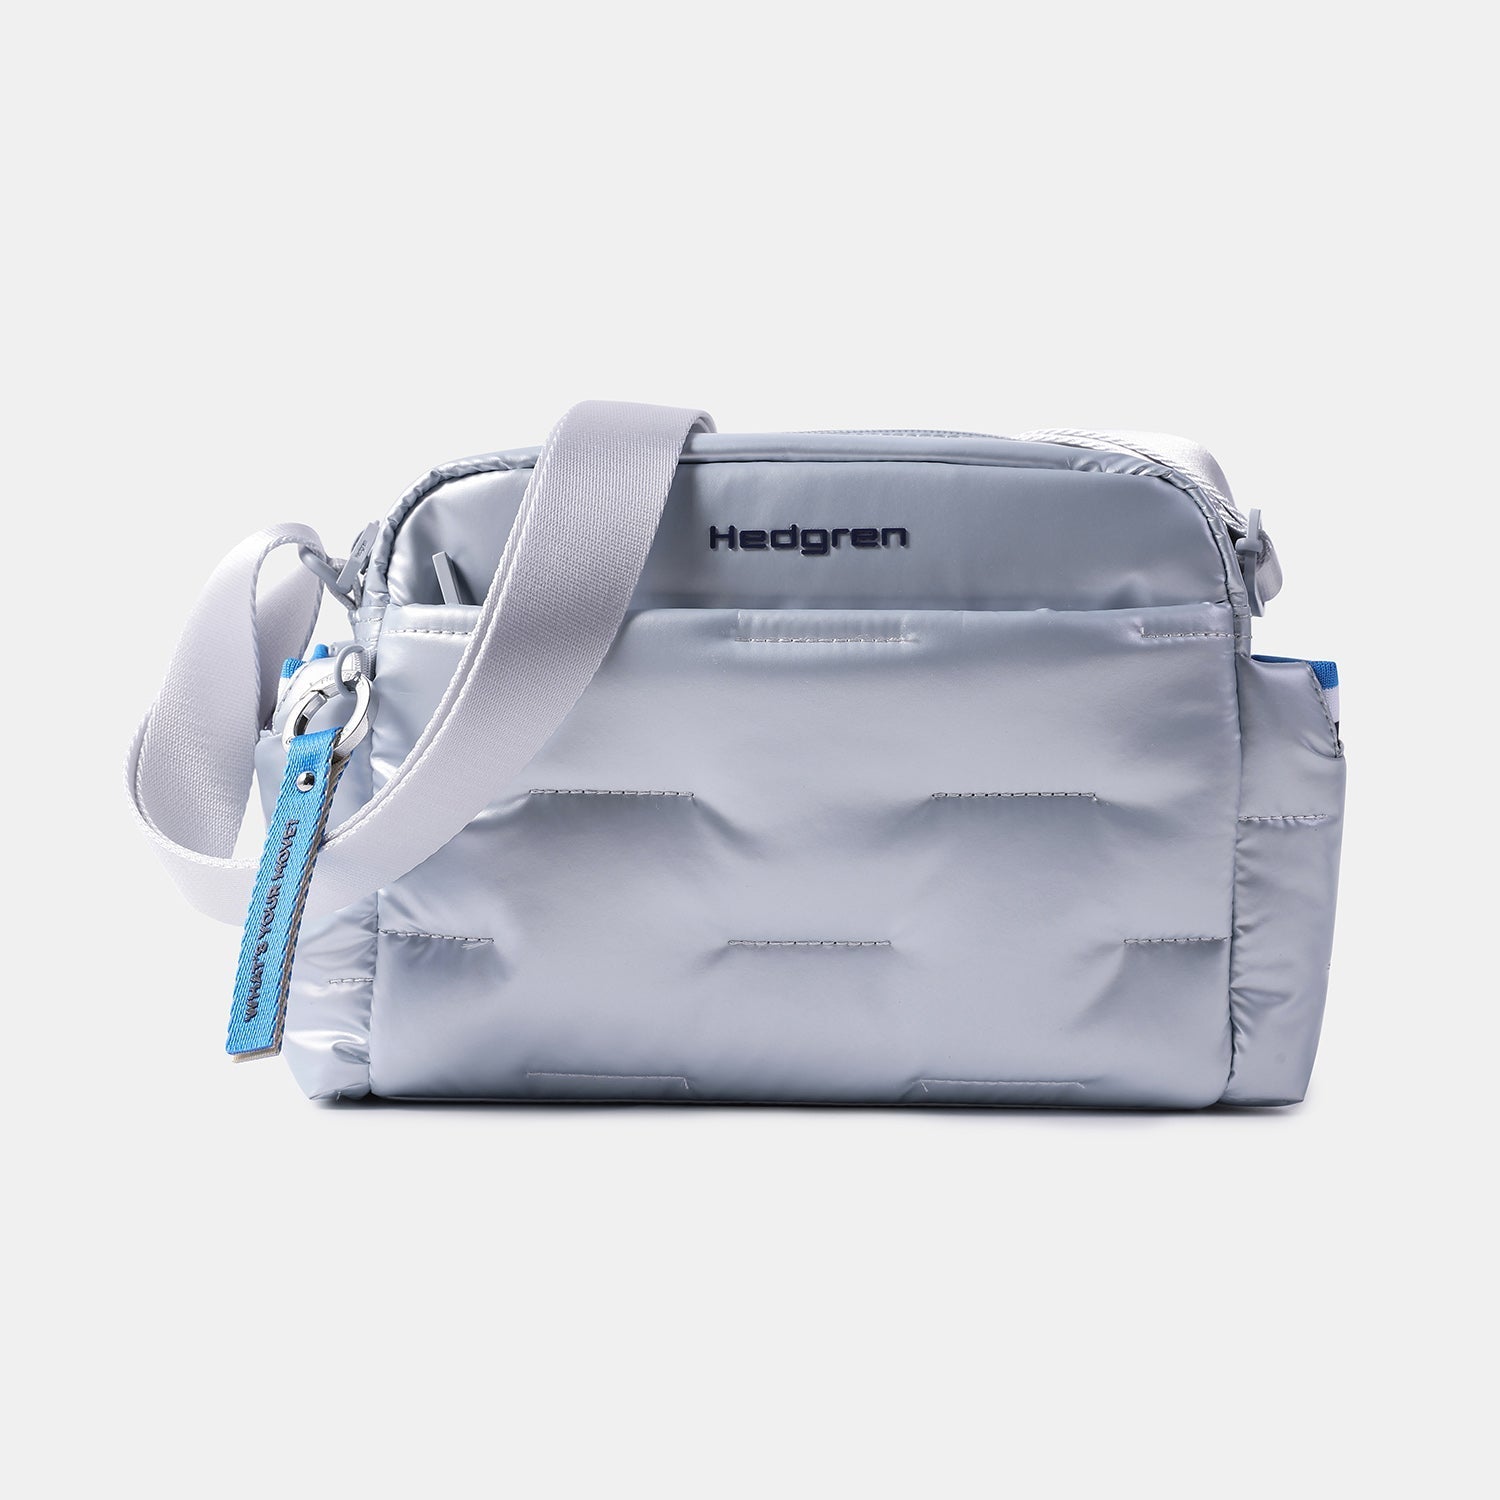 Hedgren Cozy Pearlblue Bag